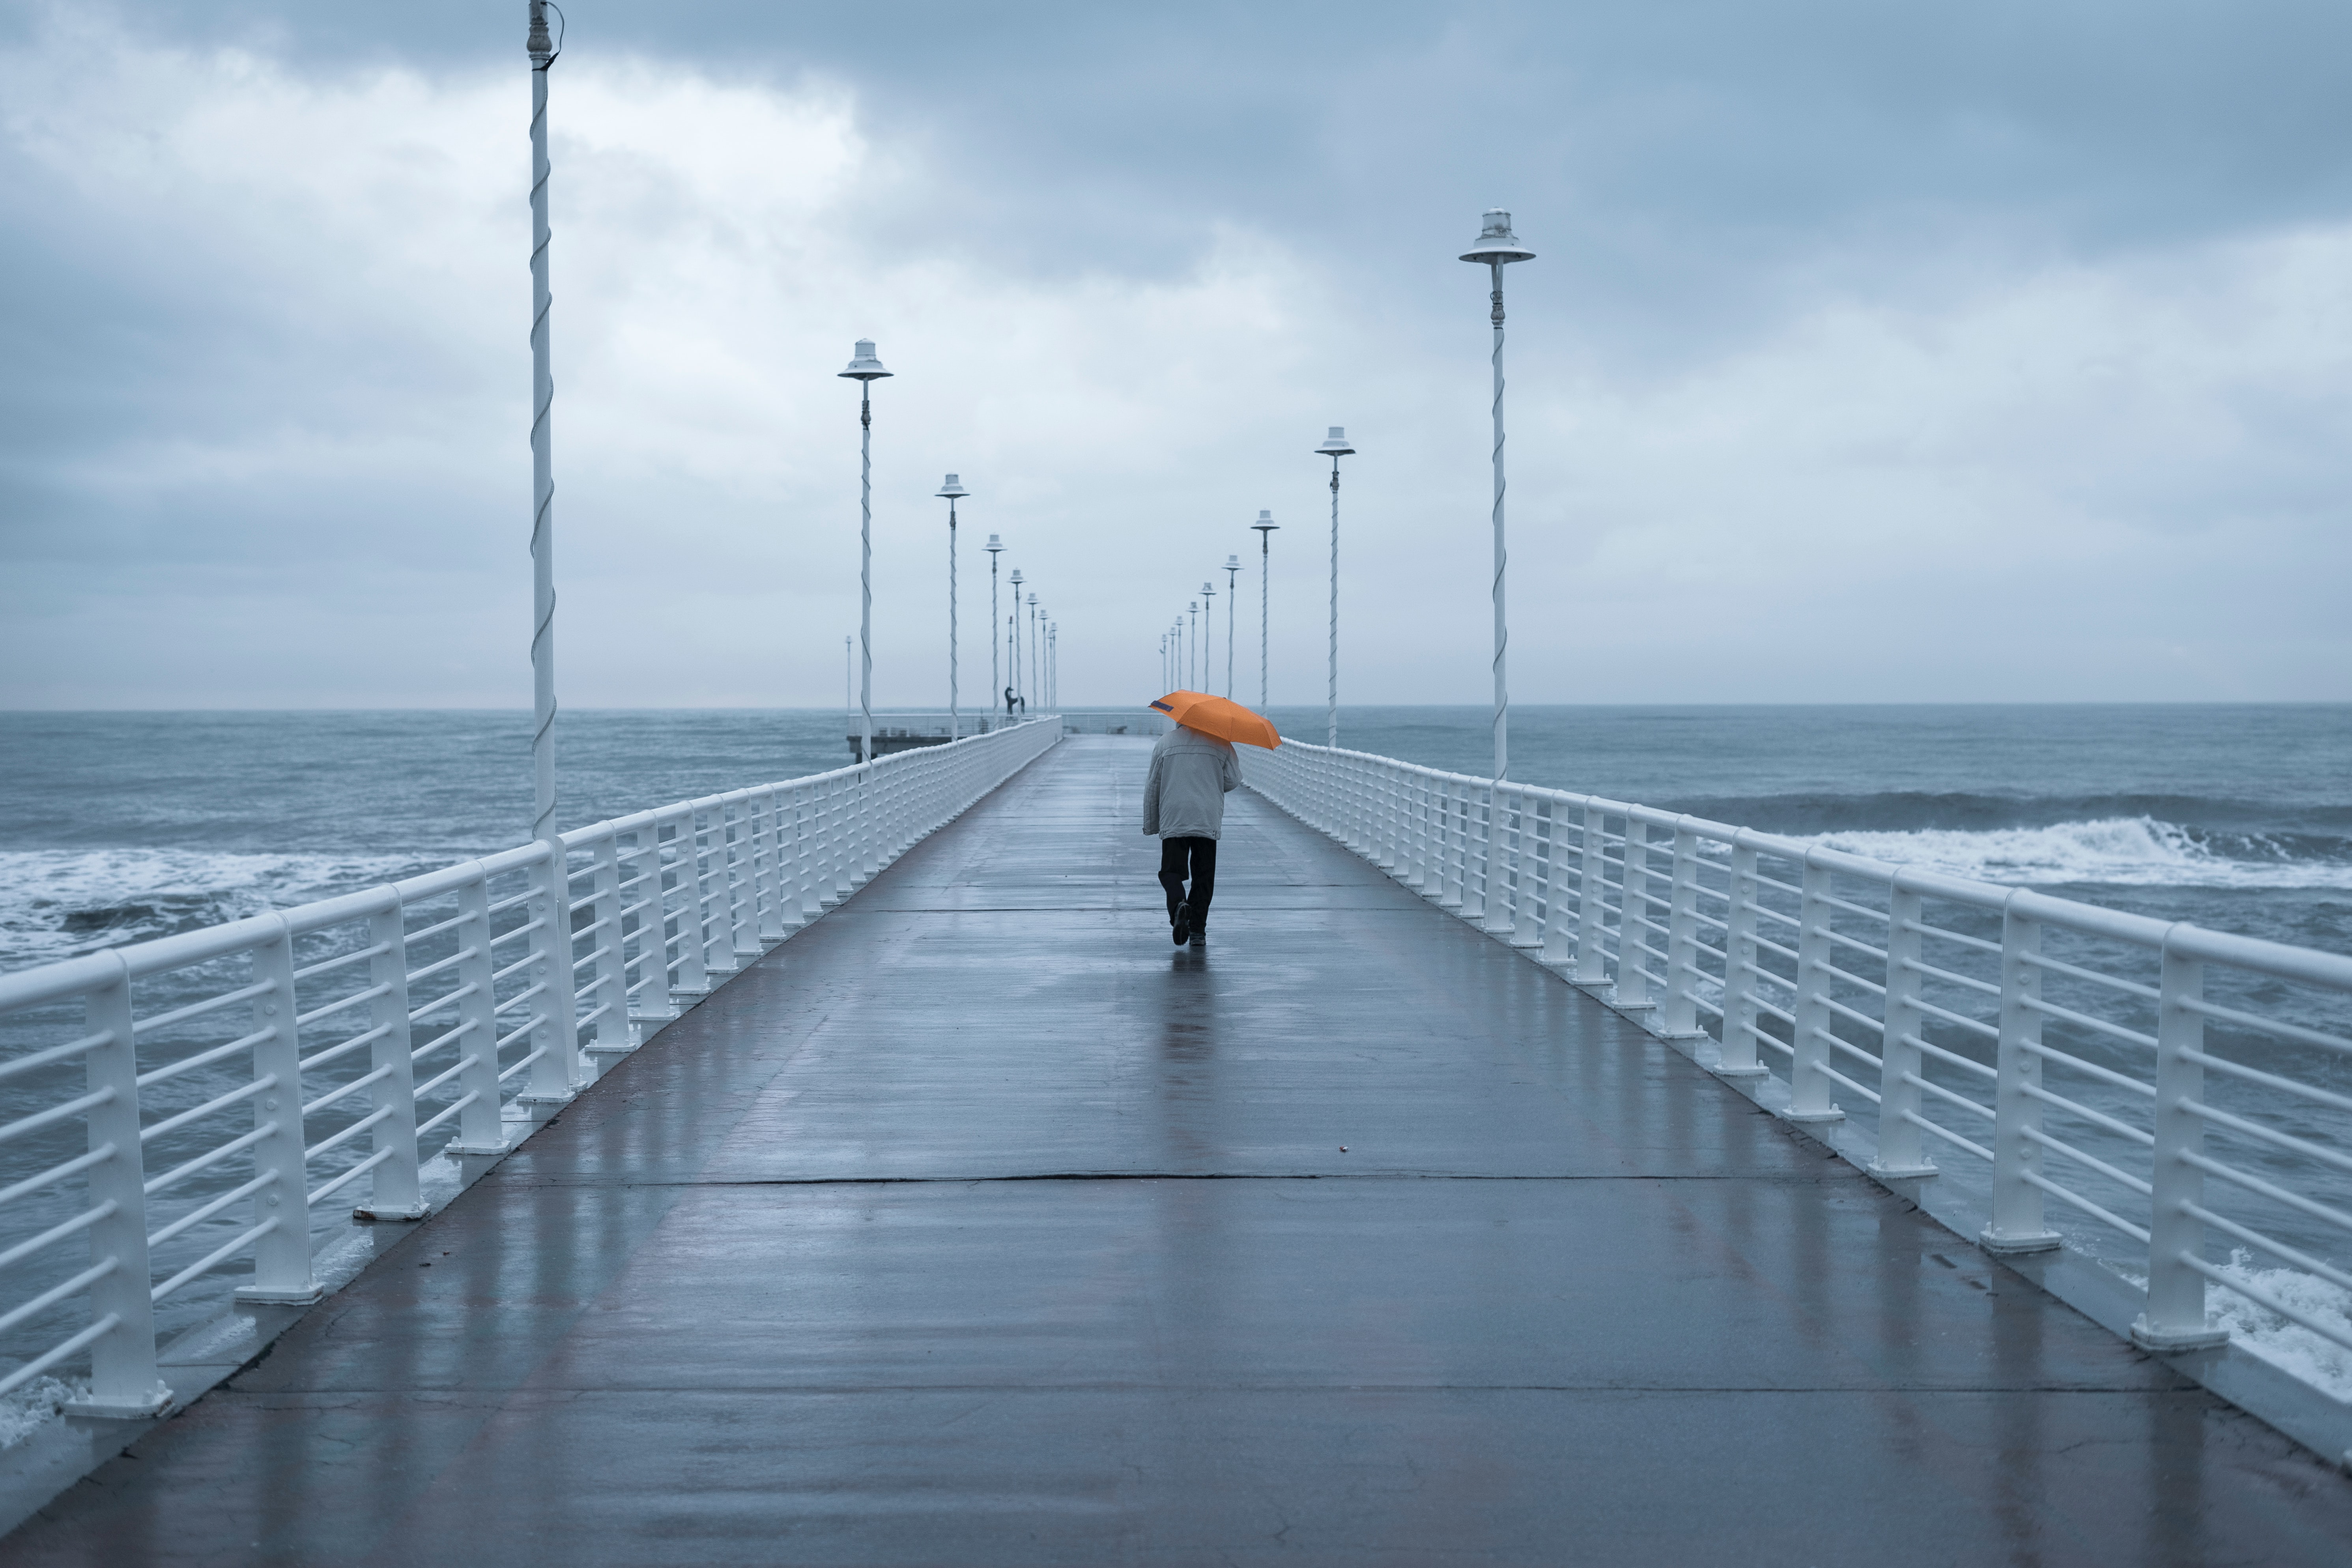 alone, pier, miscellanea, miscellaneous, human, person, loneliness, lonely, umbrella